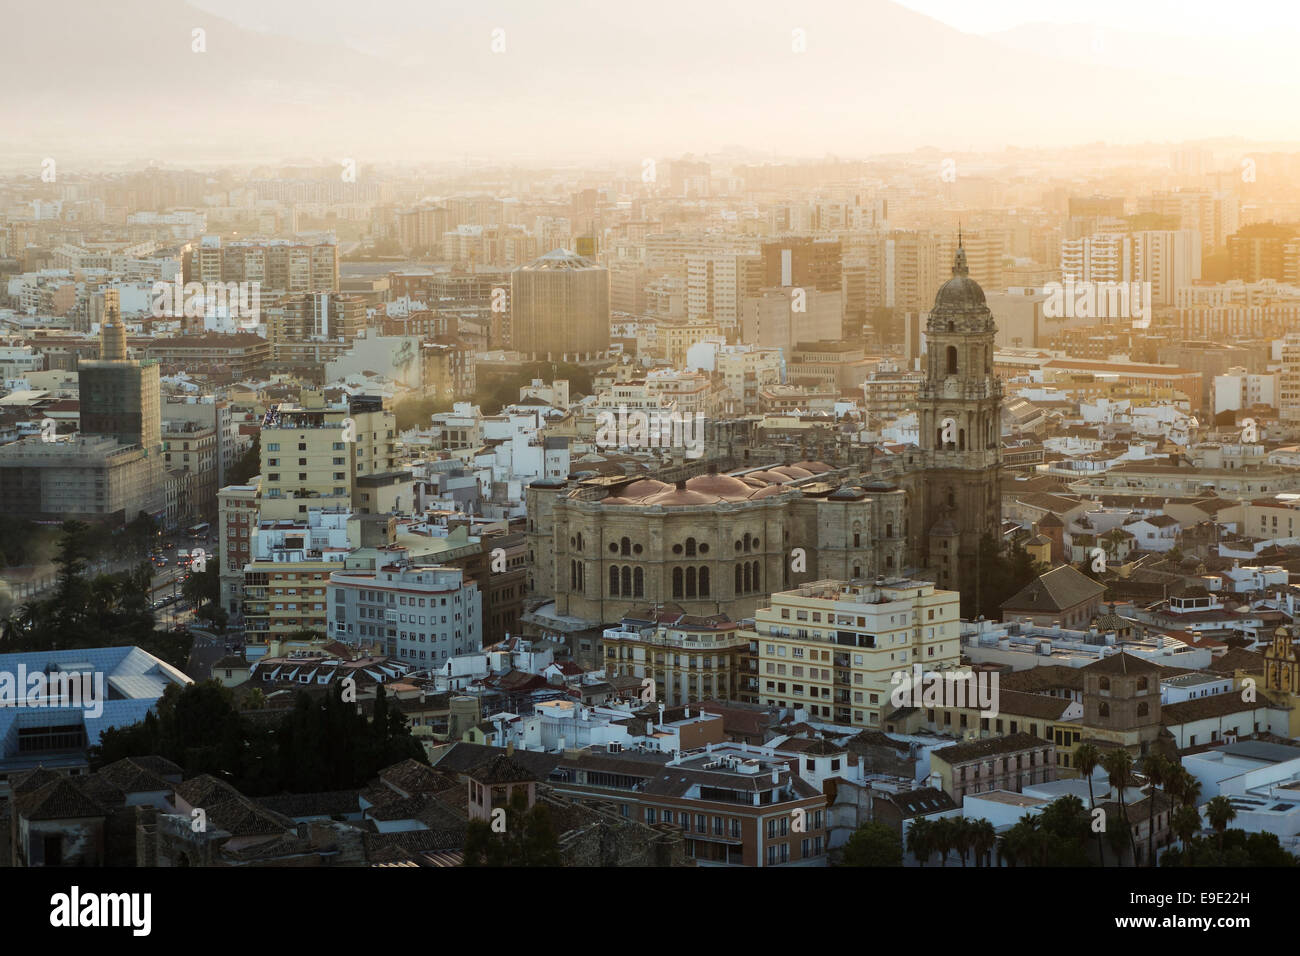 Malaga Spanien, Panoramablick auf die Skyline der Stadt mit der Kathedrale von Malaga bei Sonnenuntergang, Andalusien, Südspanien. Stockfoto